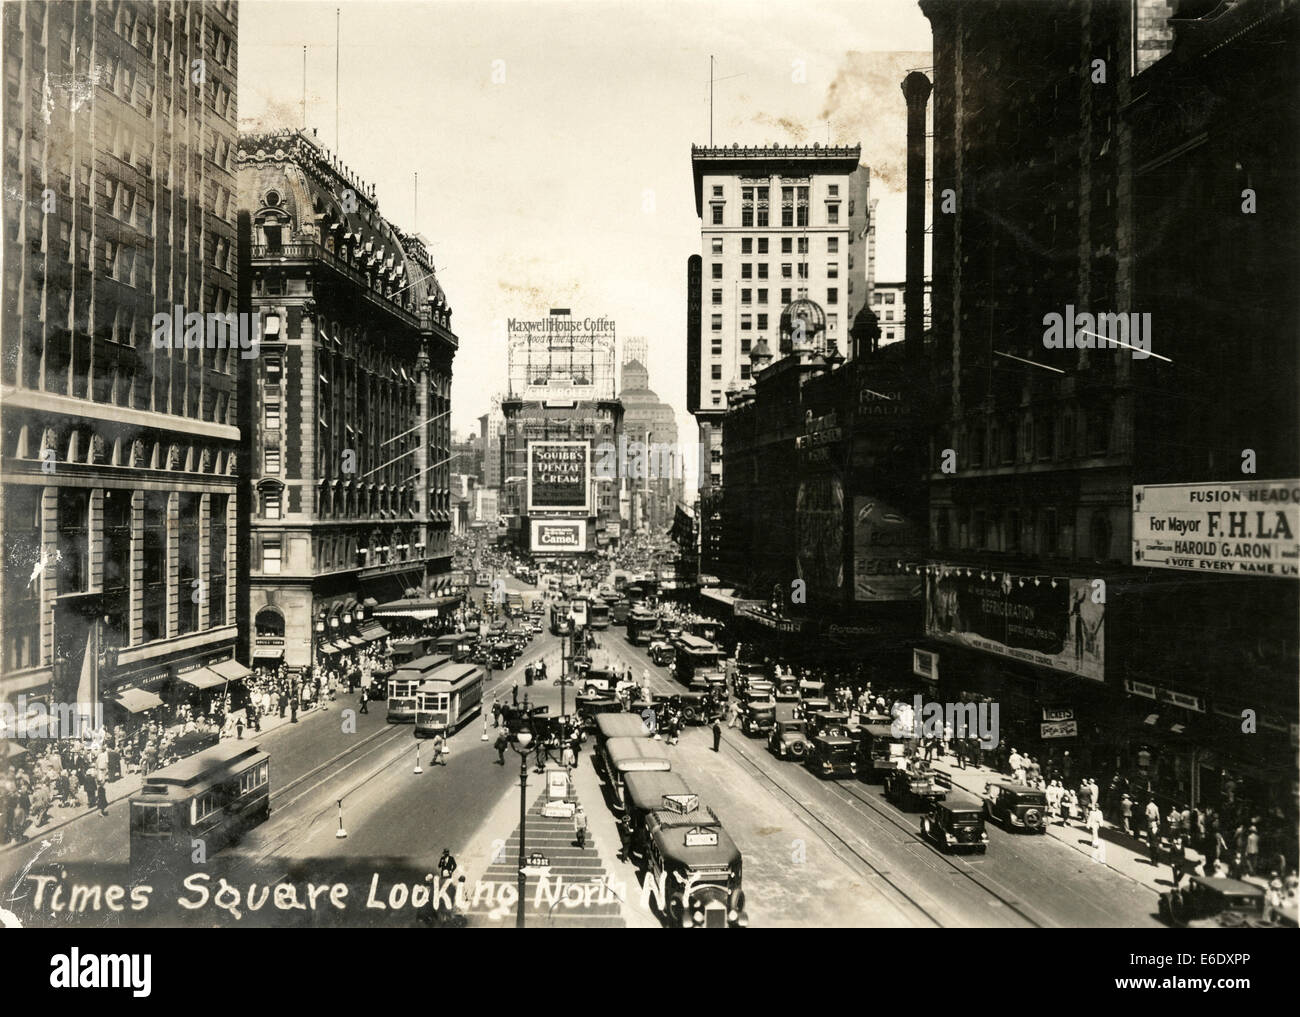 Times Square en direction nord depuis la 42e Rue, New York City, USA, vers 1933 Banque D'Images